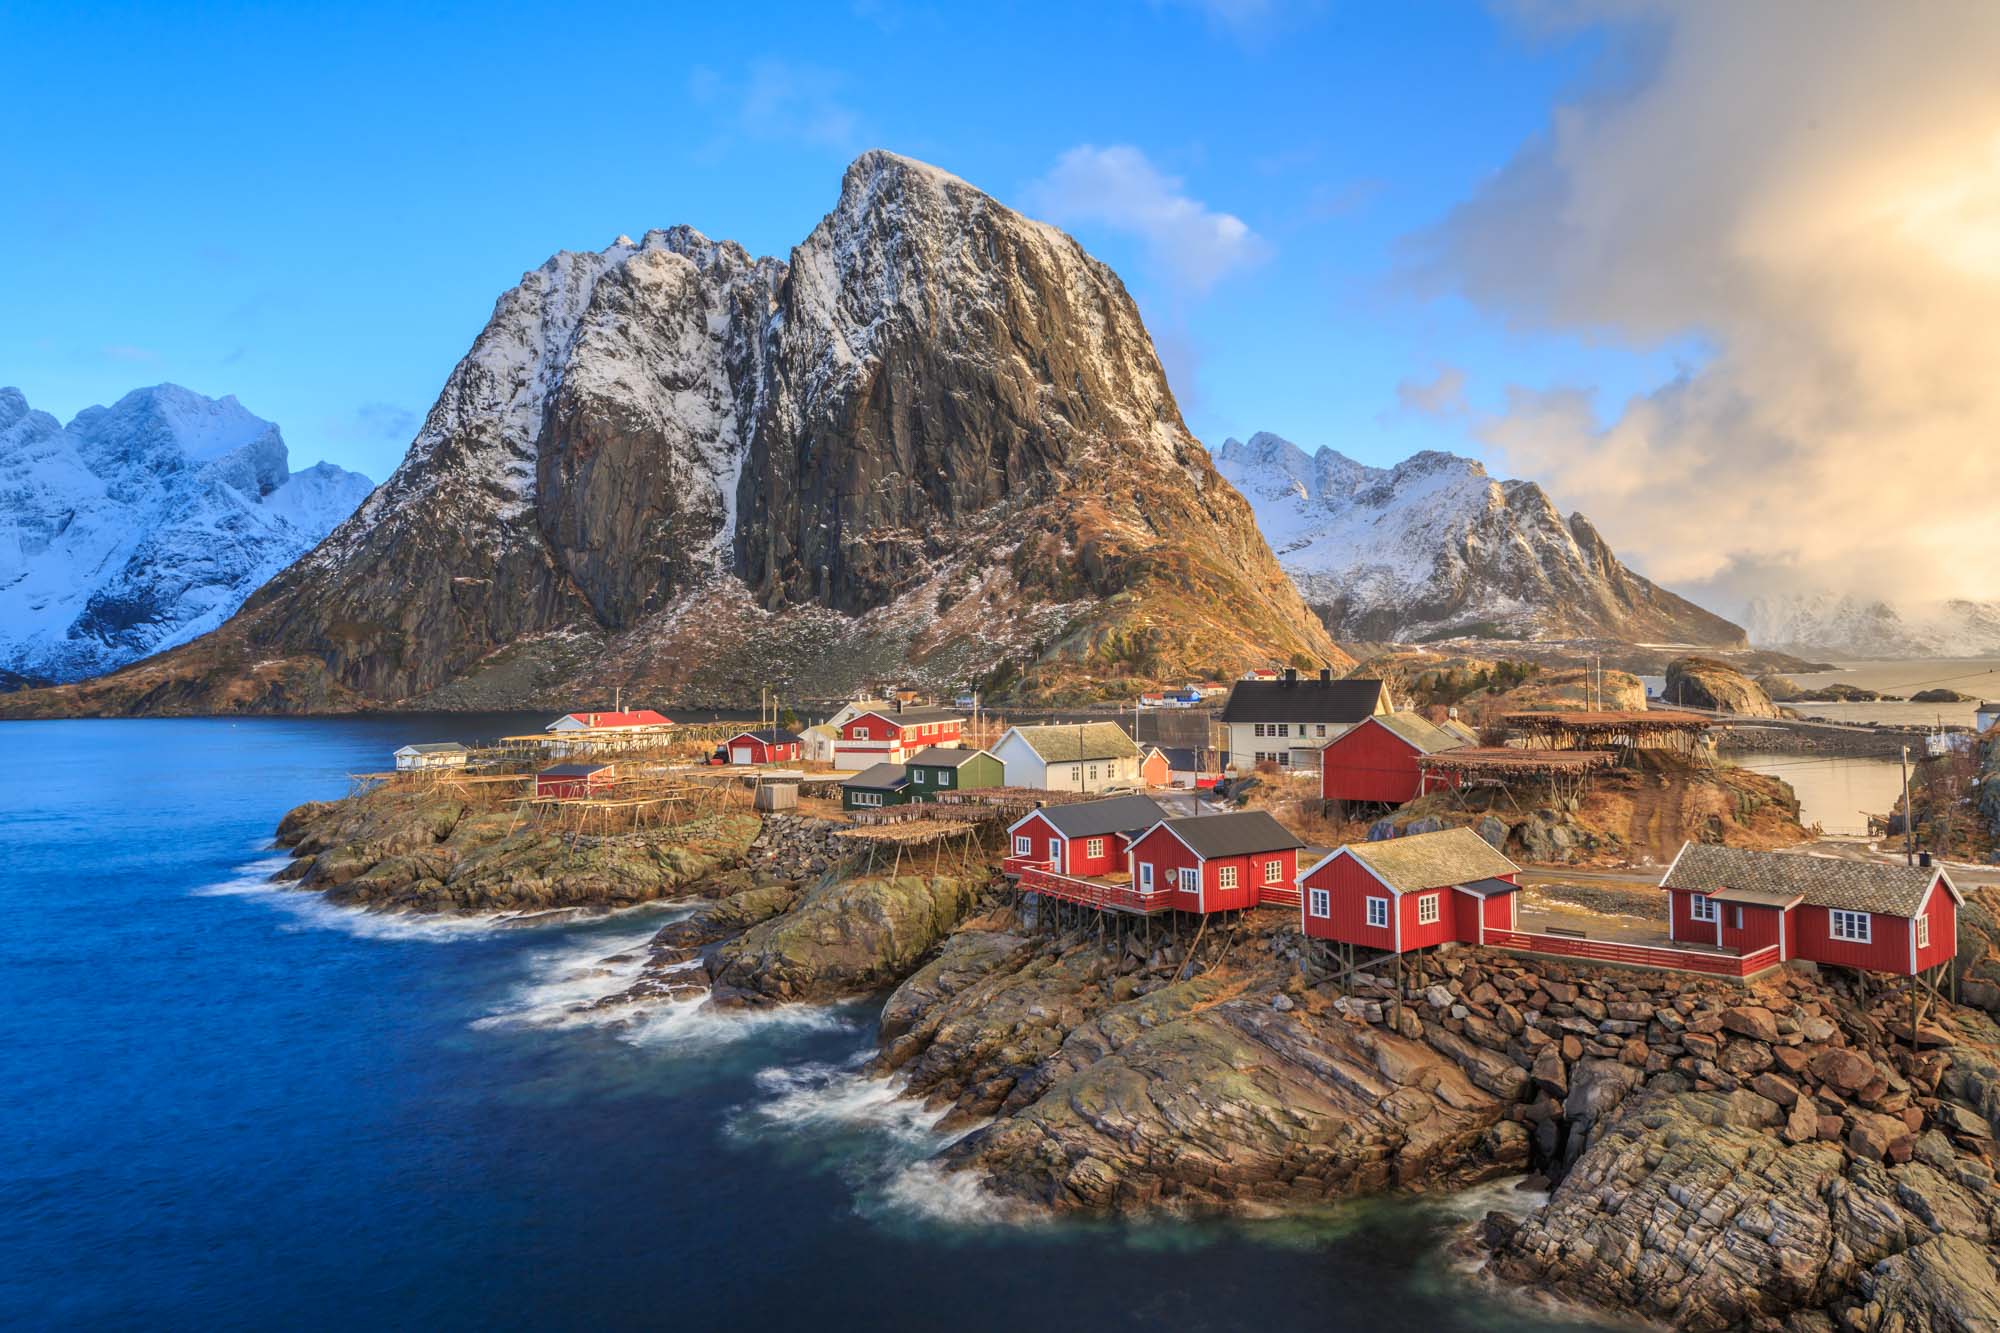 NORWAY LOFOTEN ISLANDS | SEPTEMBER 20-26, 2020 - Photo Workshop Adventures